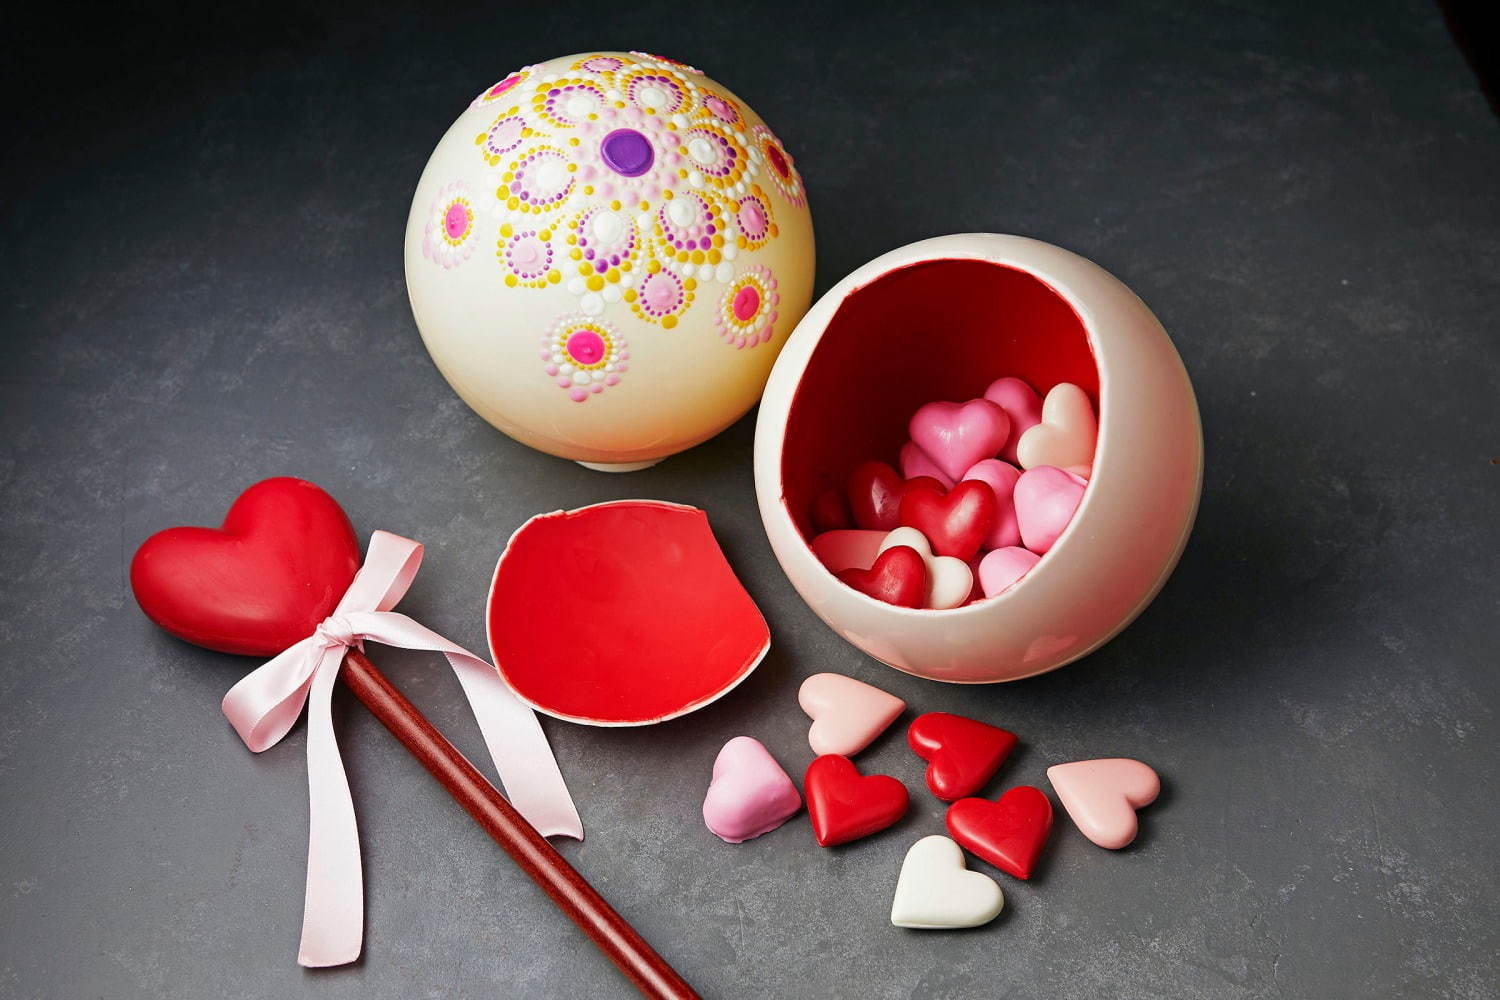 ザ・リッツ・カールトン大阪のバレンタイン、ステッキで割る球体チョコや本型チョコボックスなど｜写真1